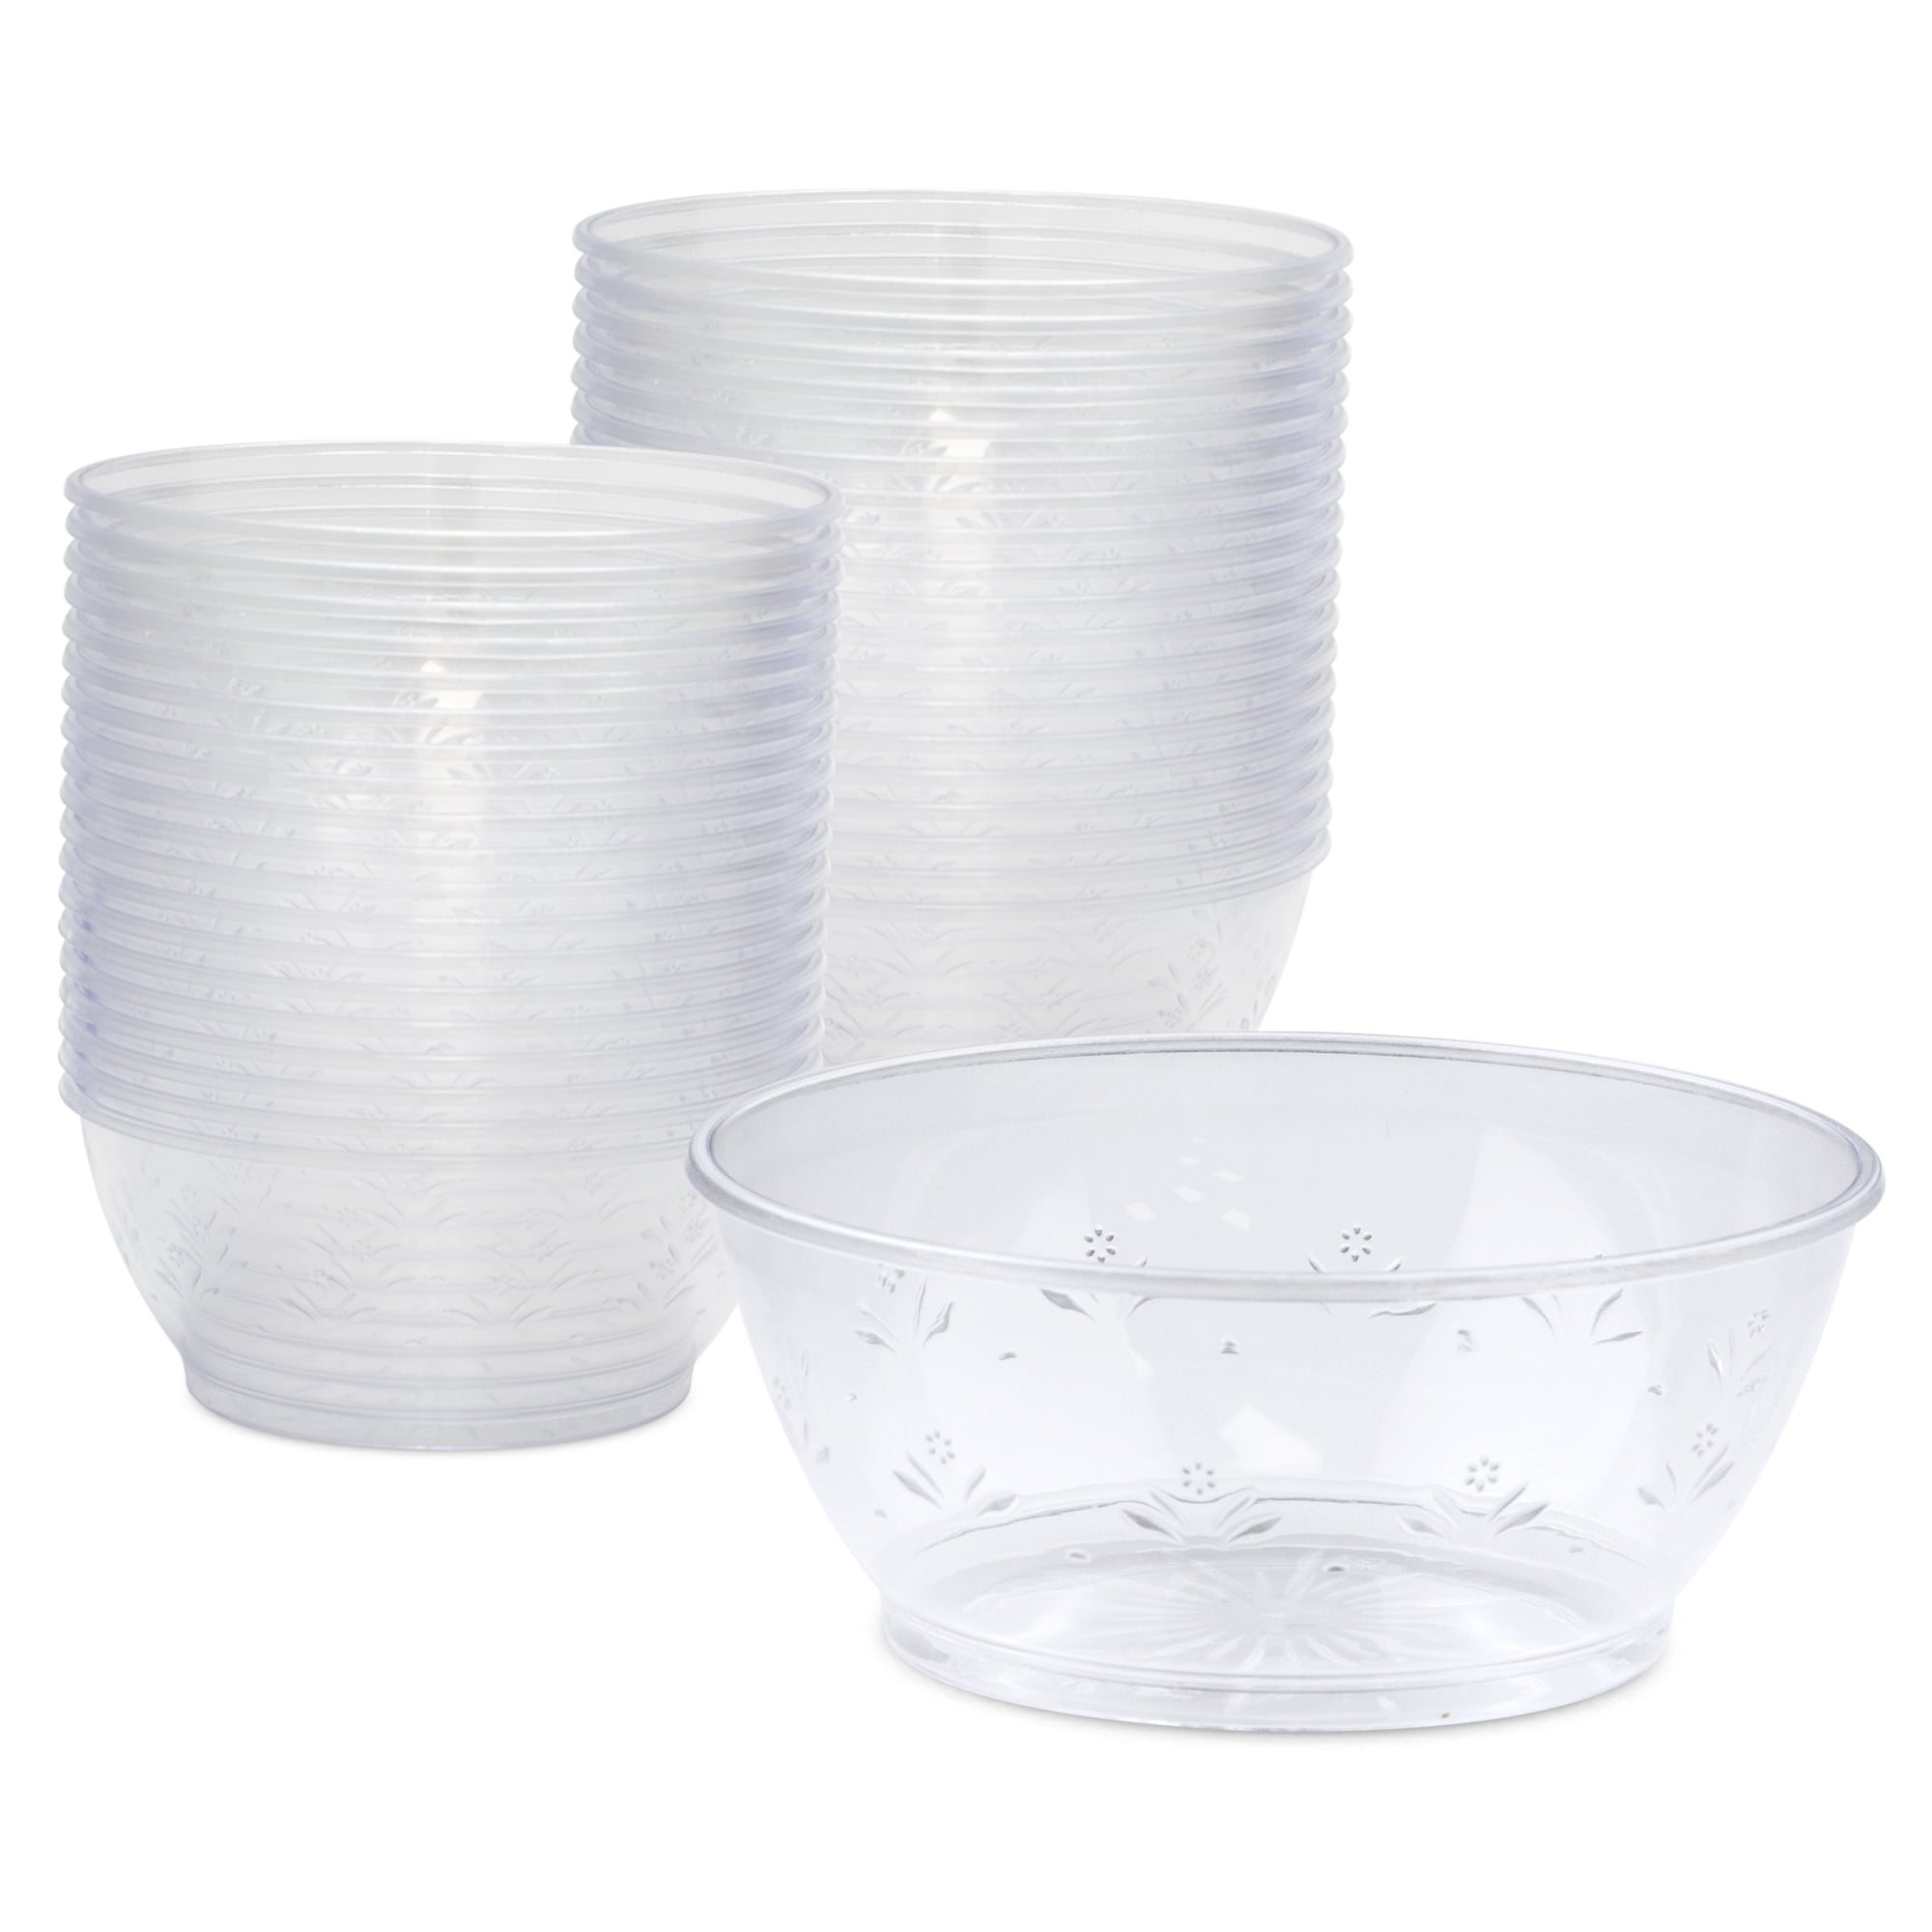 Clear Plastic Bowls - (Bulk 100 Pack) 6 Oz Disposable Premium Hard Pla –